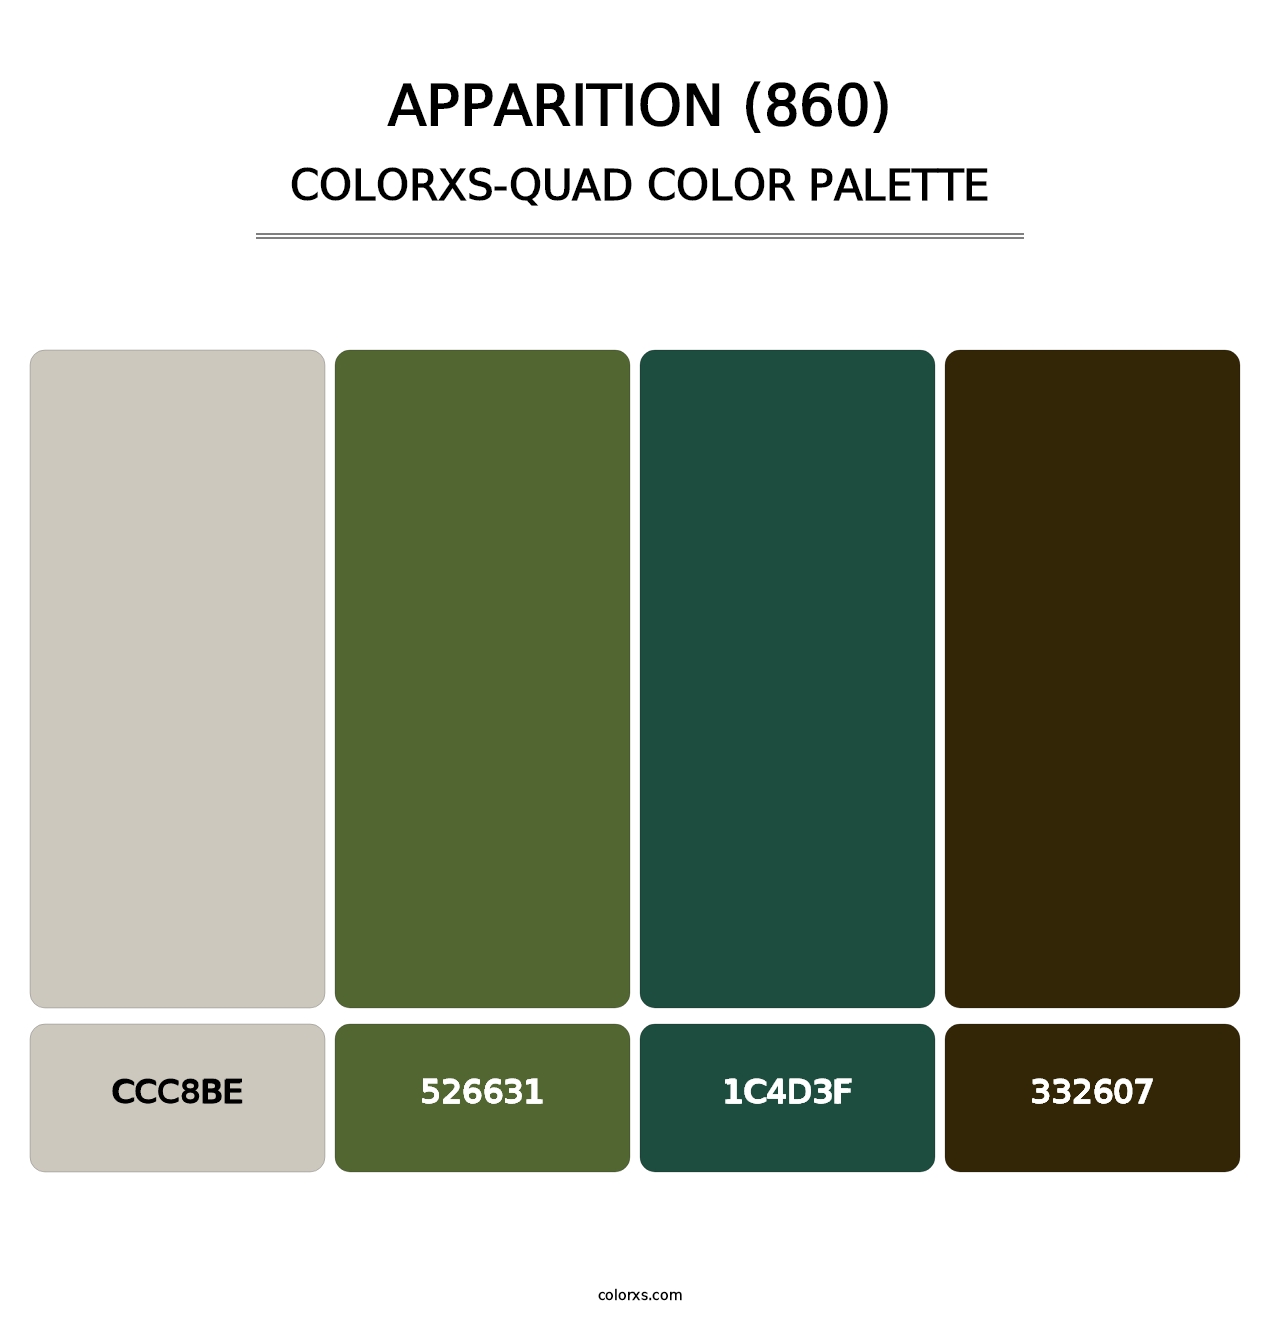 Apparition (860) - Colorxs Quad Palette